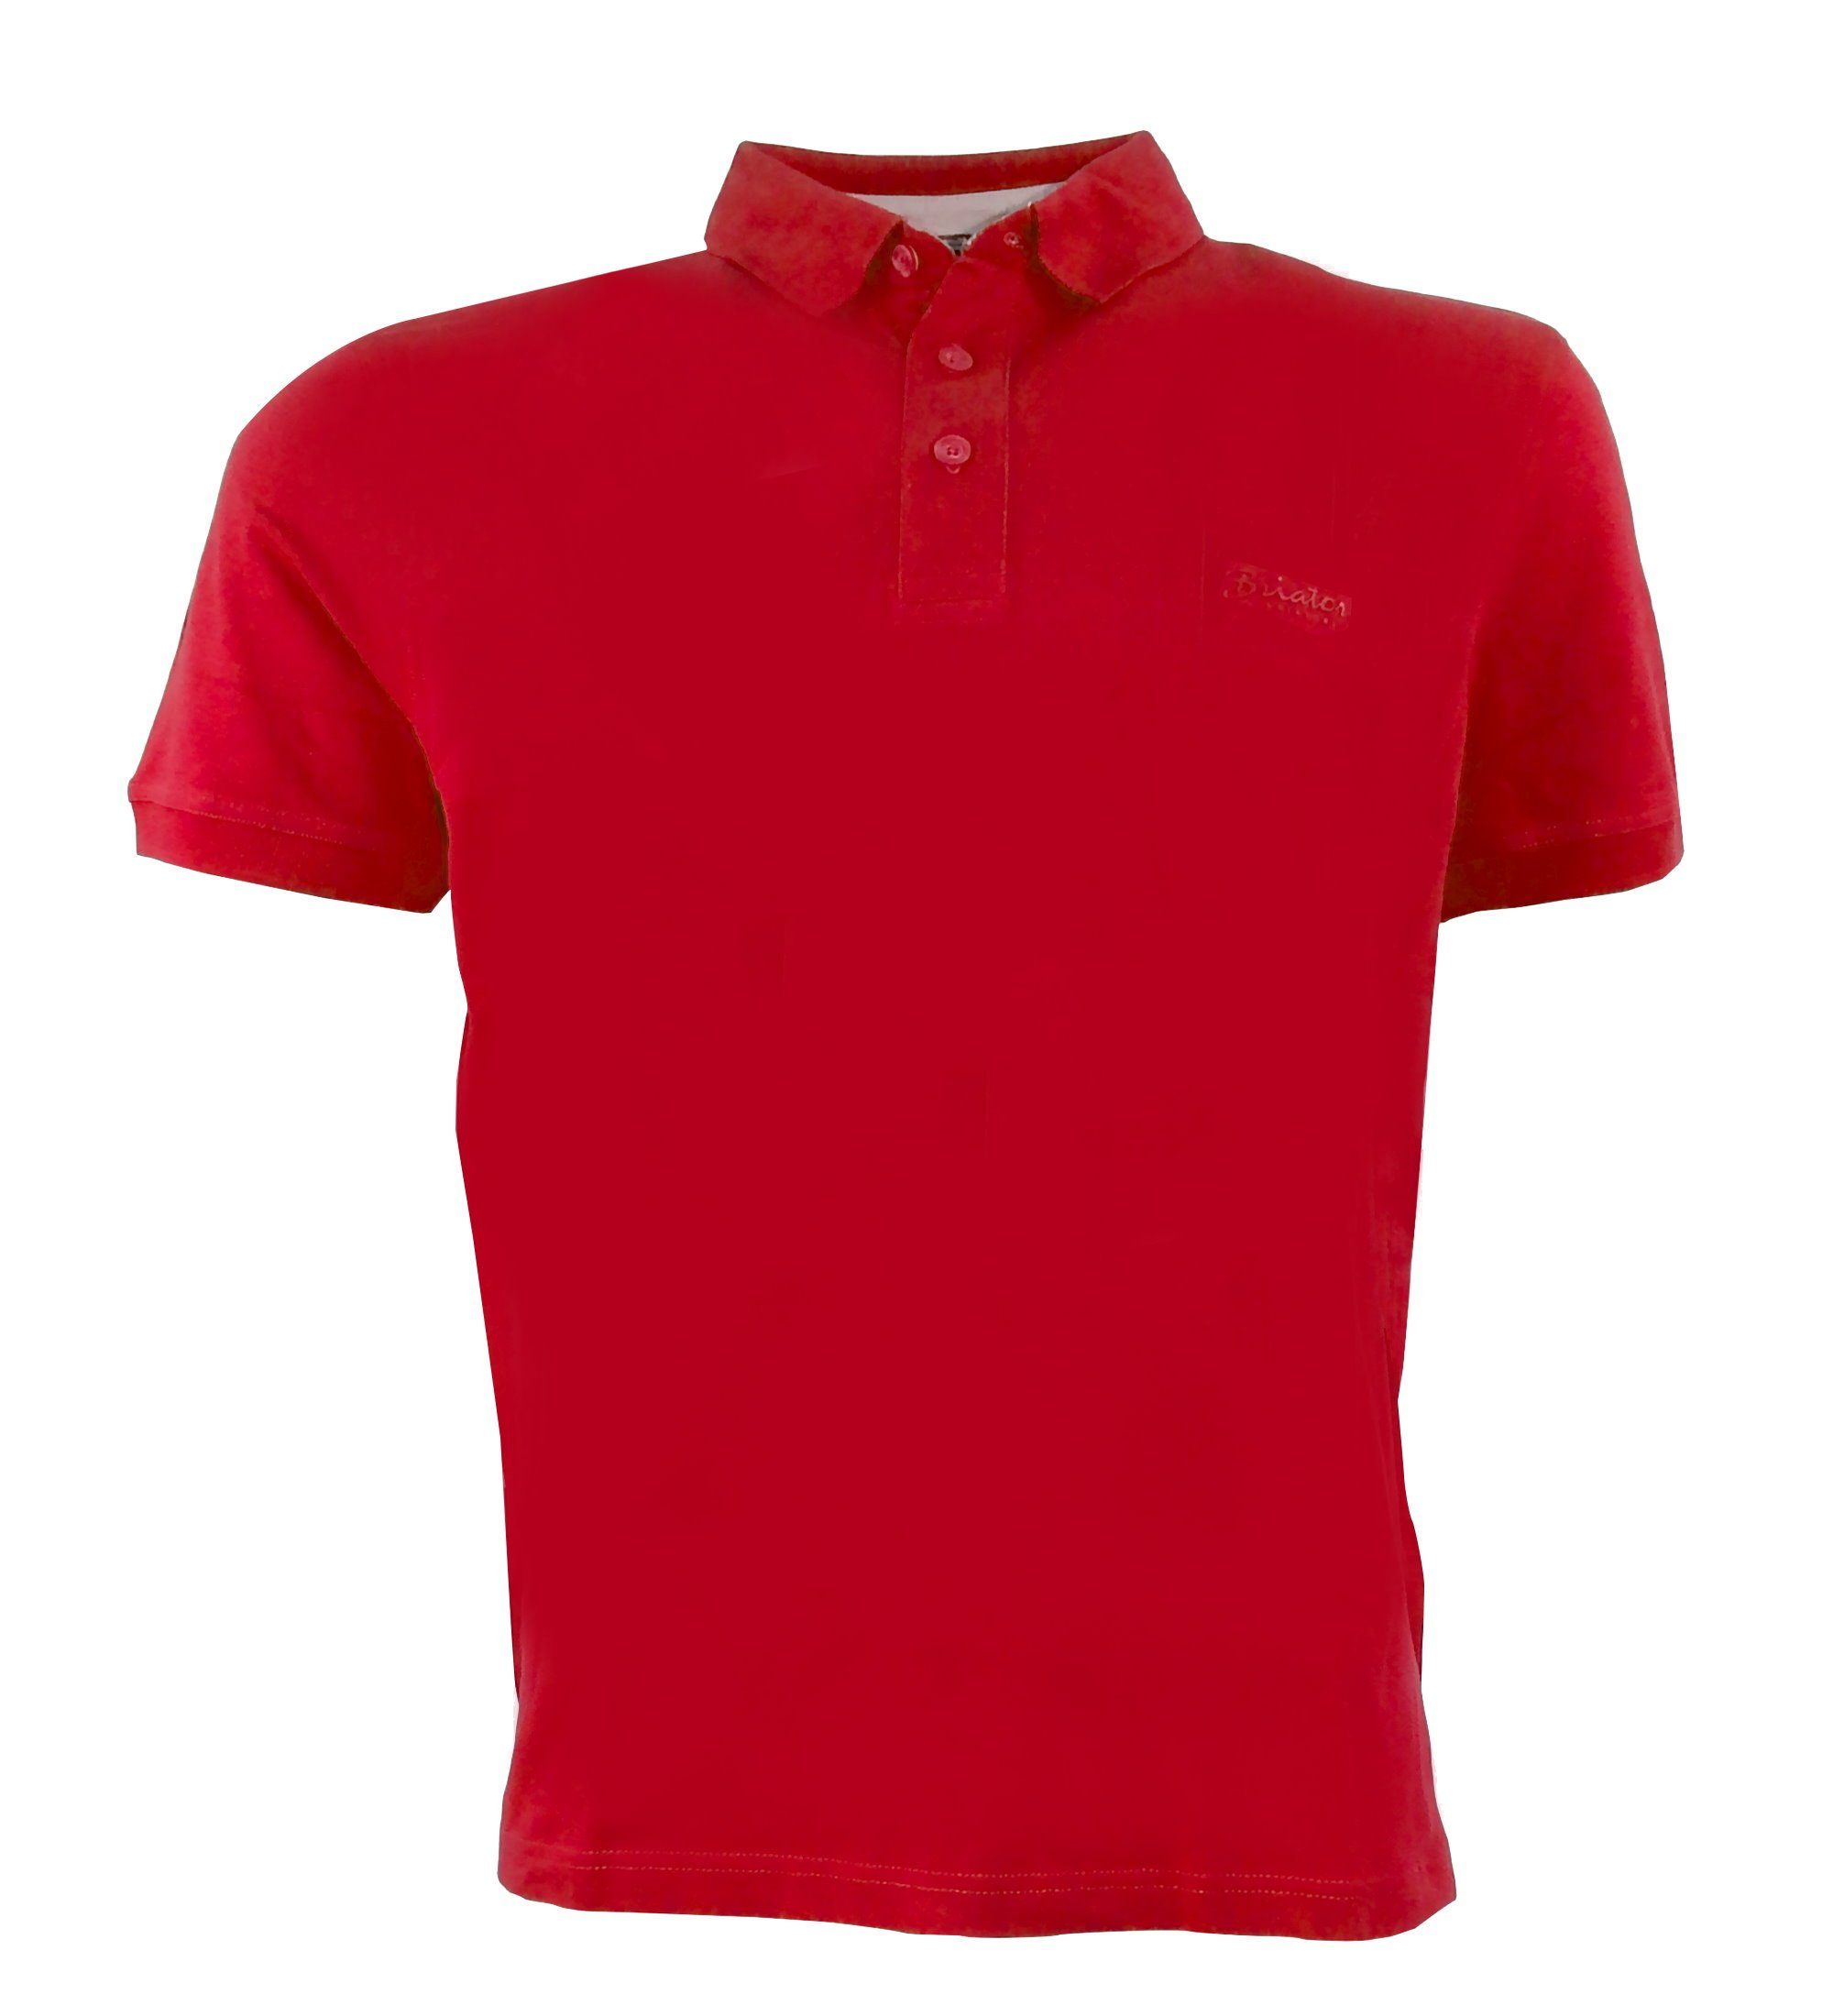 Briatore Poloshirt Herren Polo Shirt Polohemd T-Shirt Shirt Basic Sommer Polokragen TShirt Rot